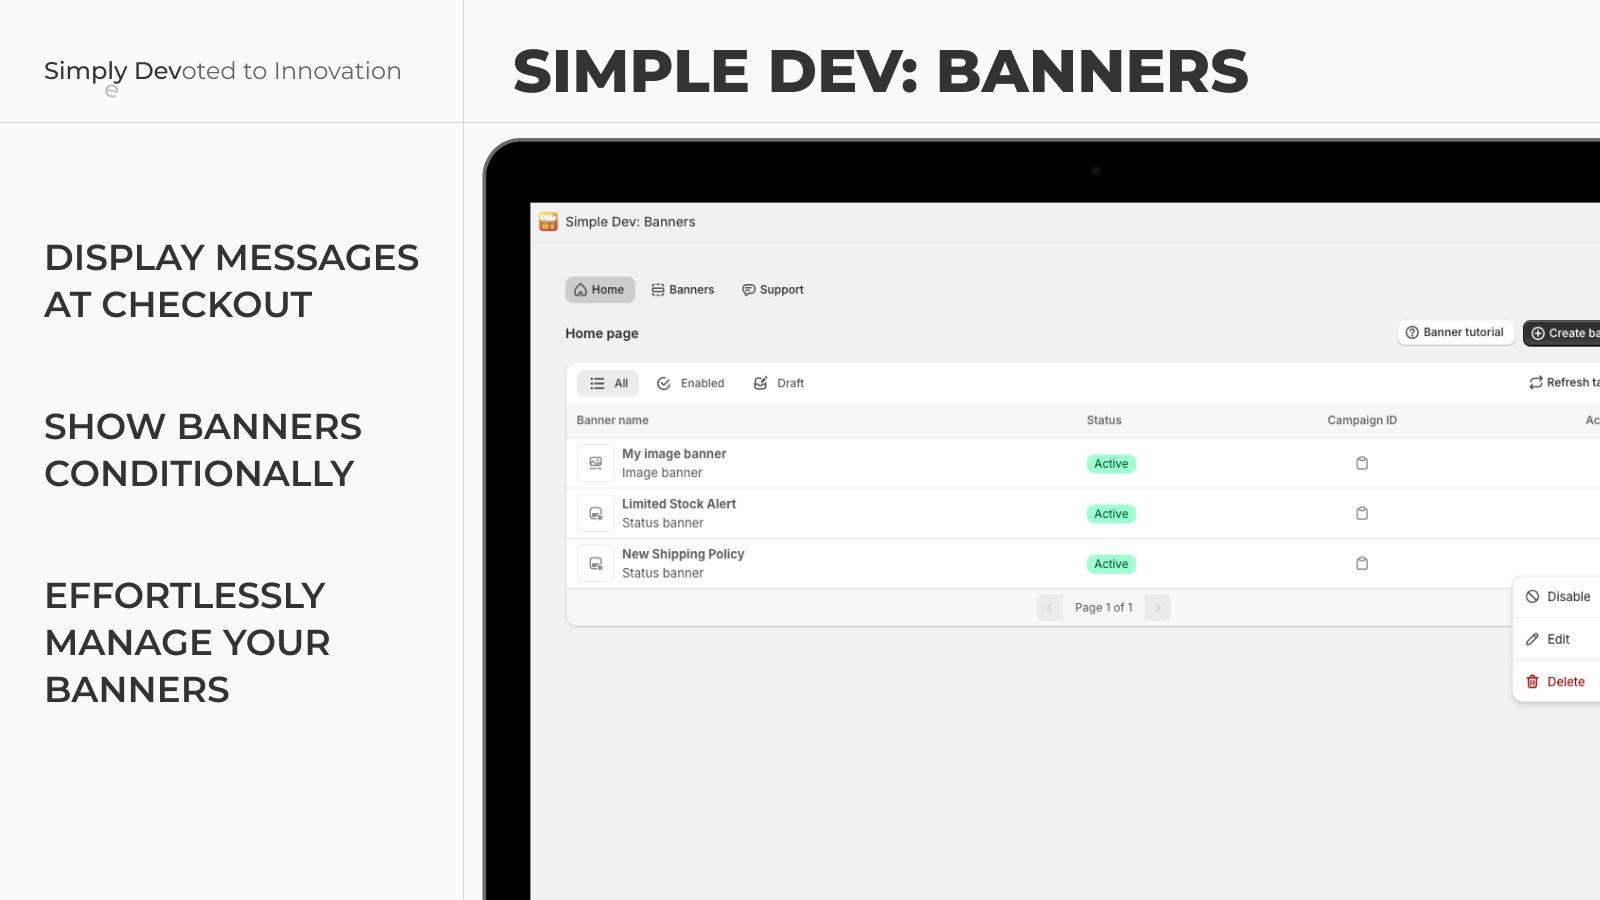 Simple Dev: Banners